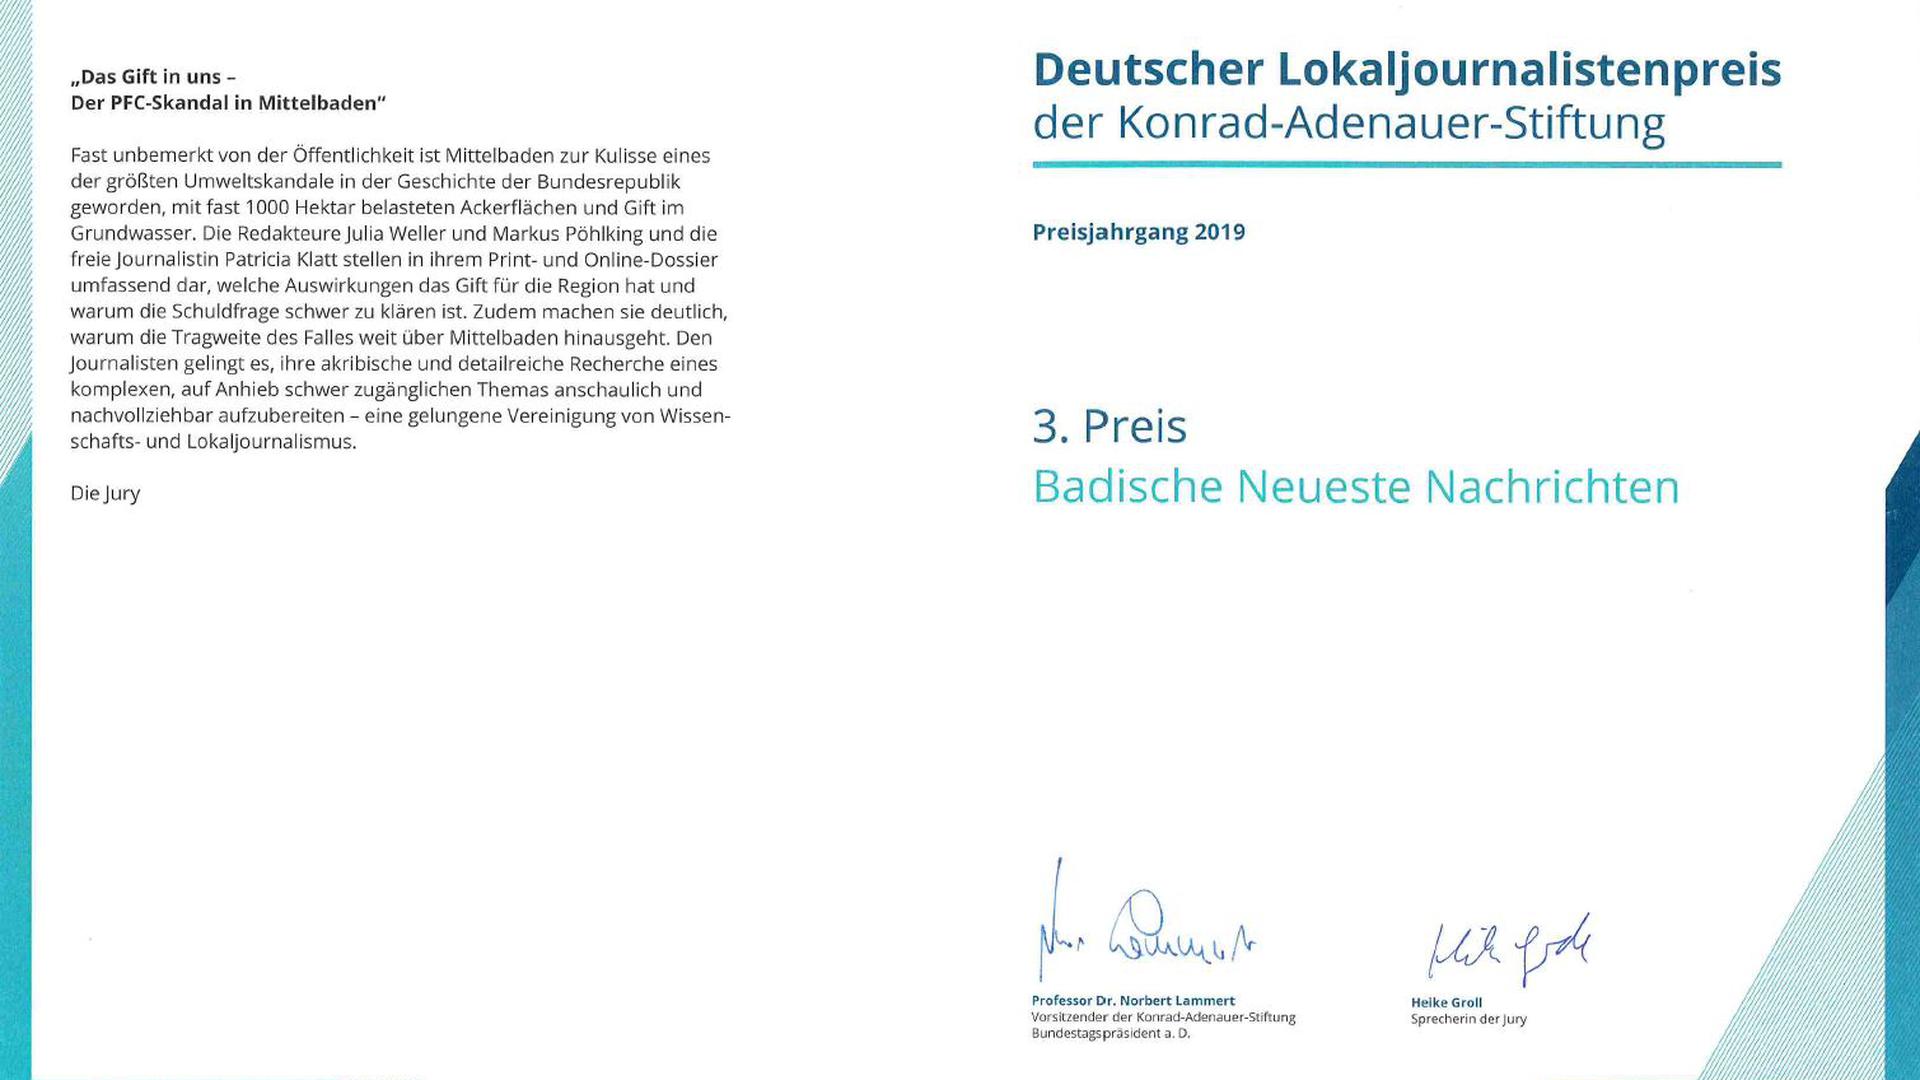 Die Jury überreichte den BNN-Autoren in Berlin diese Urkunde.